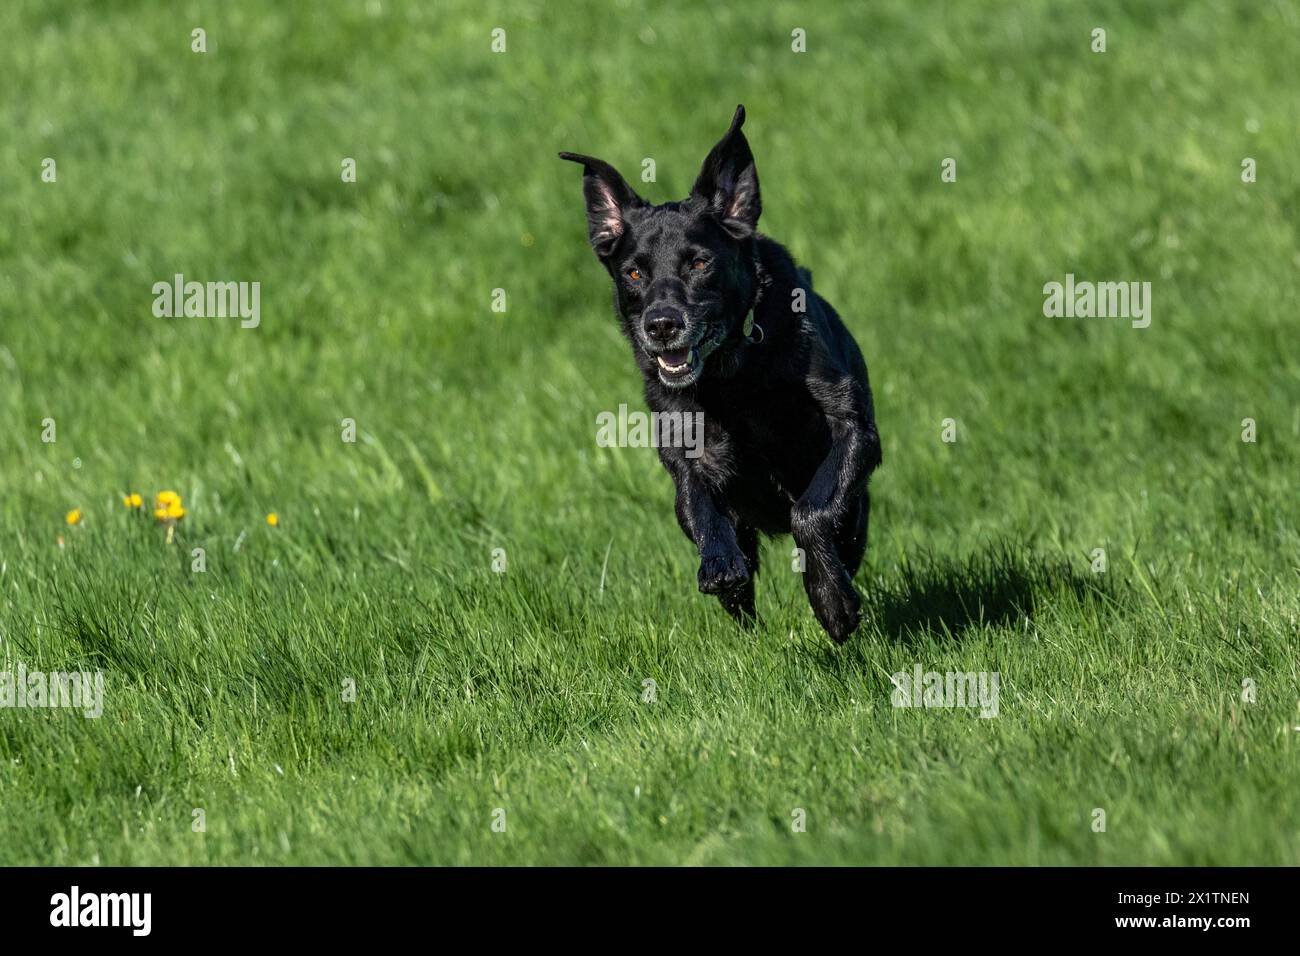 Un labrador retriever nero che corre attraverso un prato. Il cane è pieno di vita, energico e felice. Foto Stock